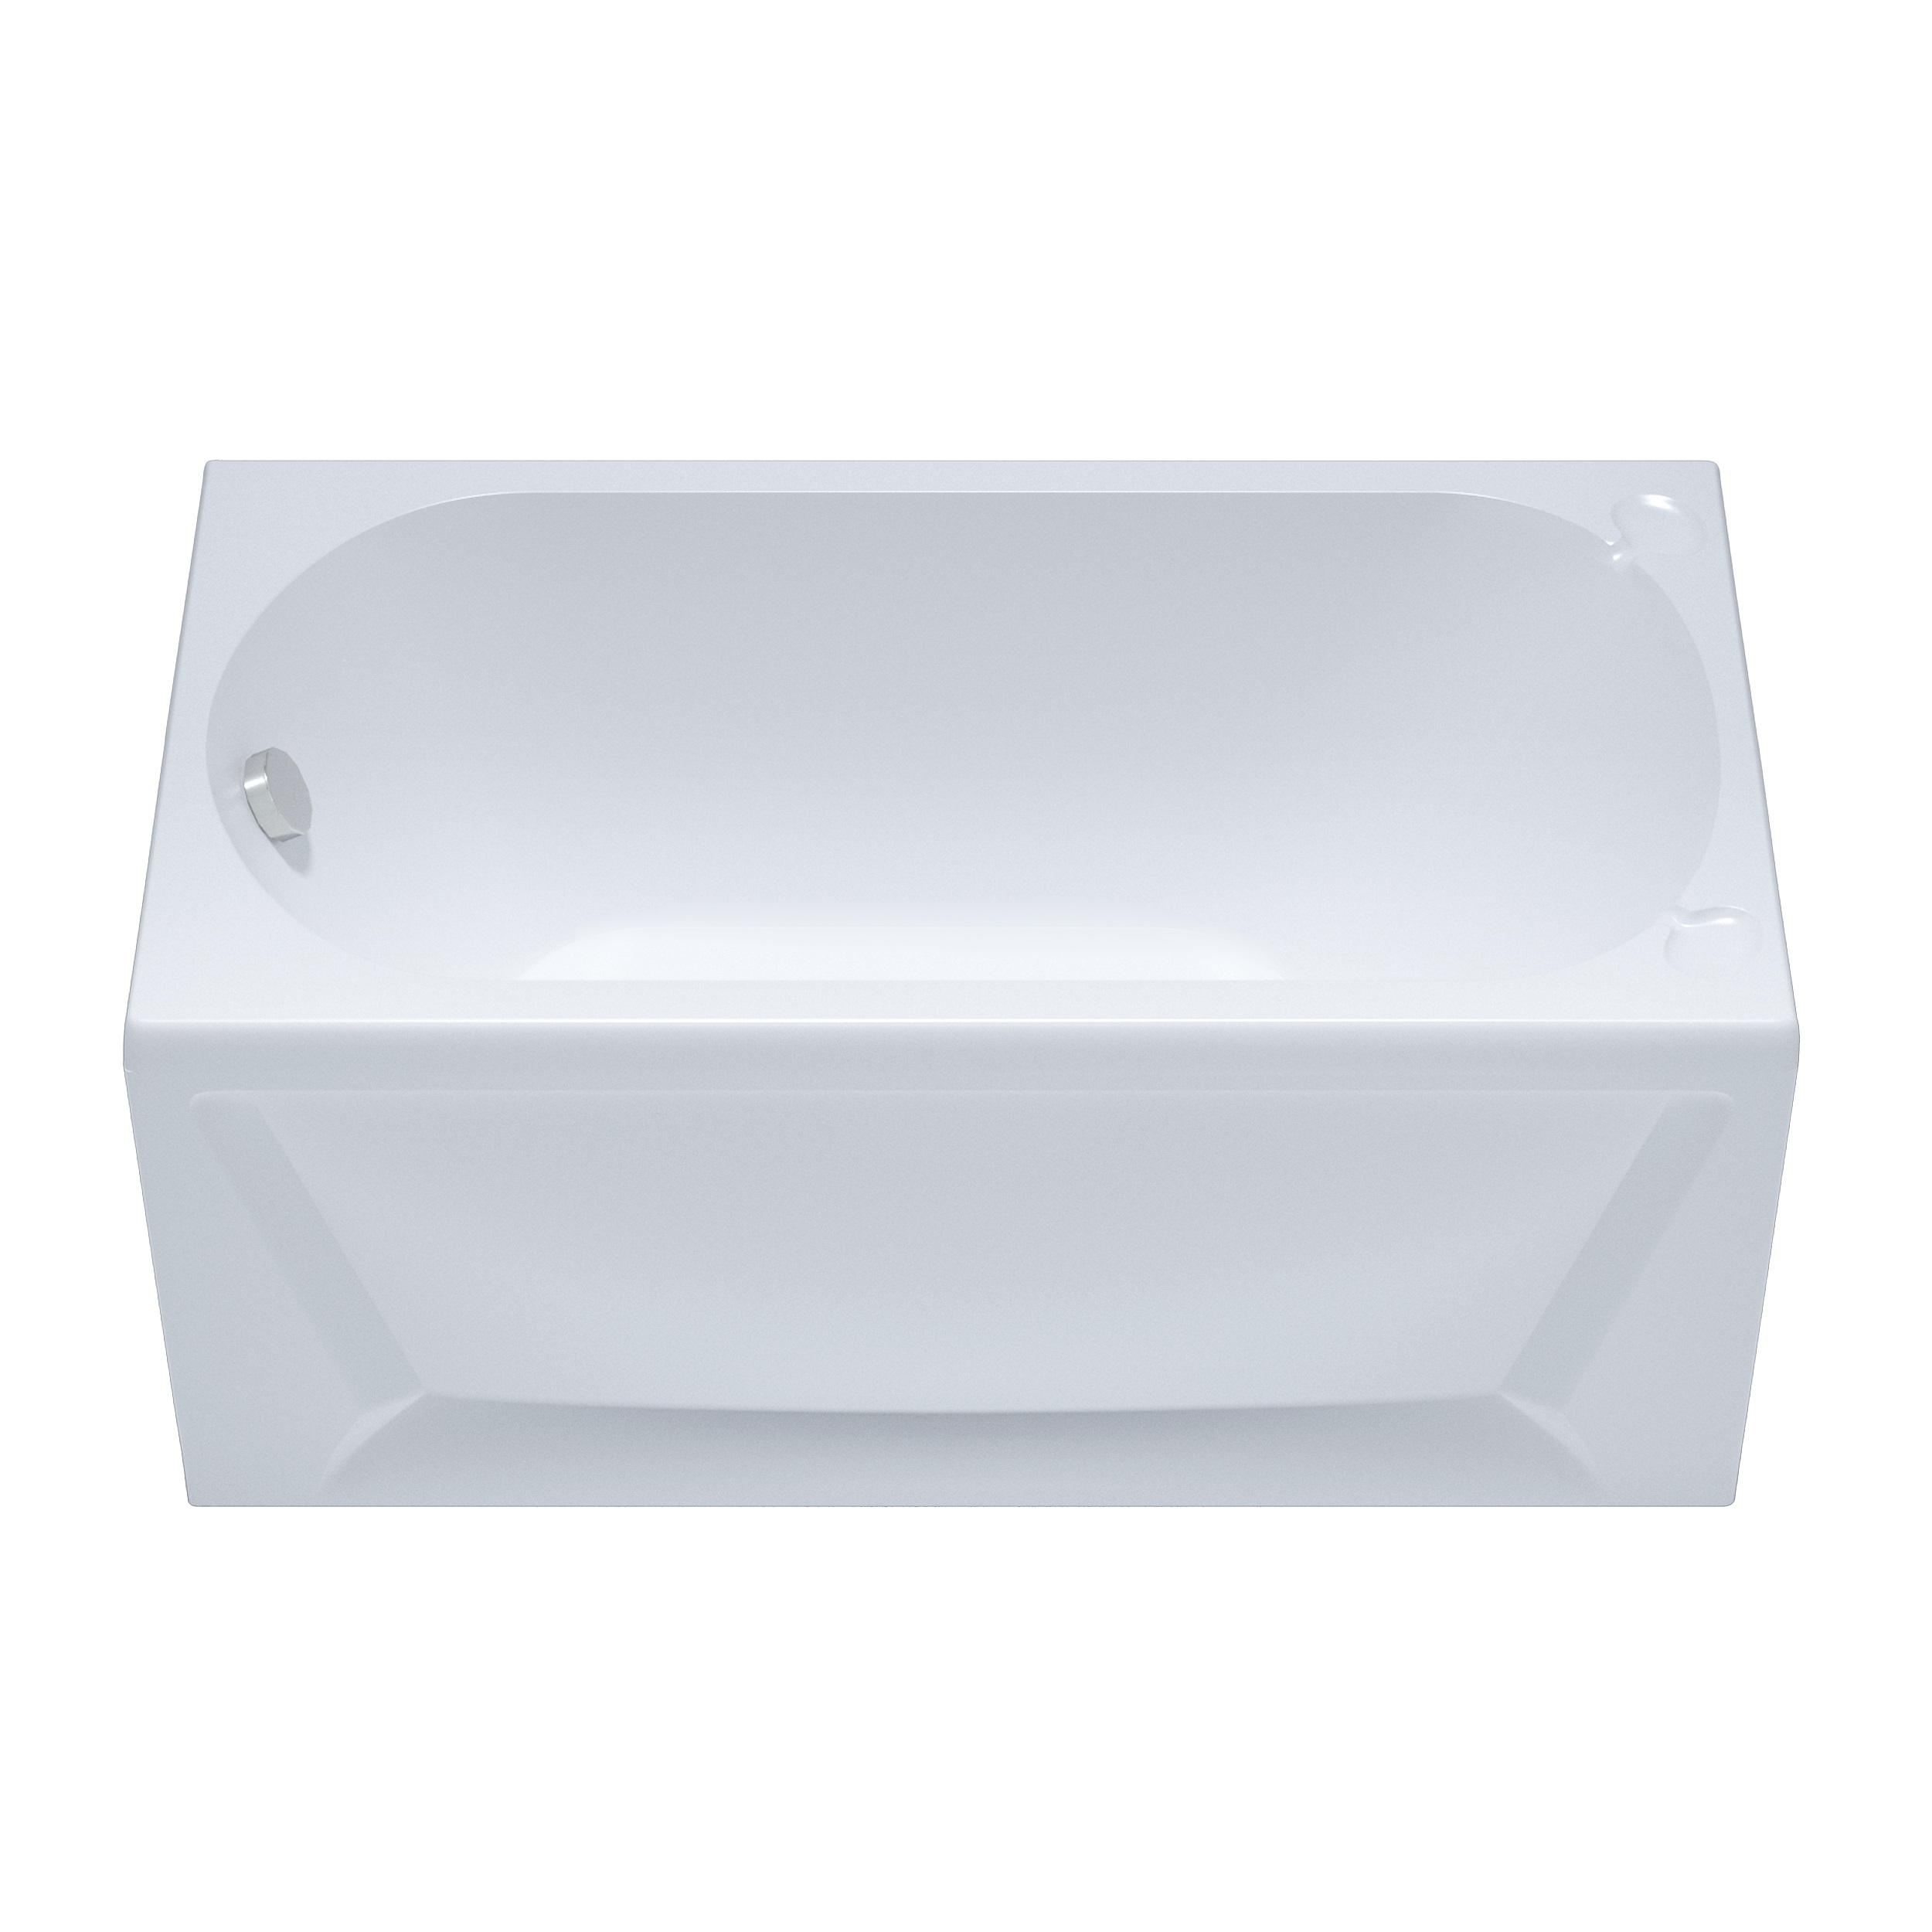 Акриловая ванна Тритон Стандарт 130x70, размер 130x70, цвет белый Н0000099326 - фото 2